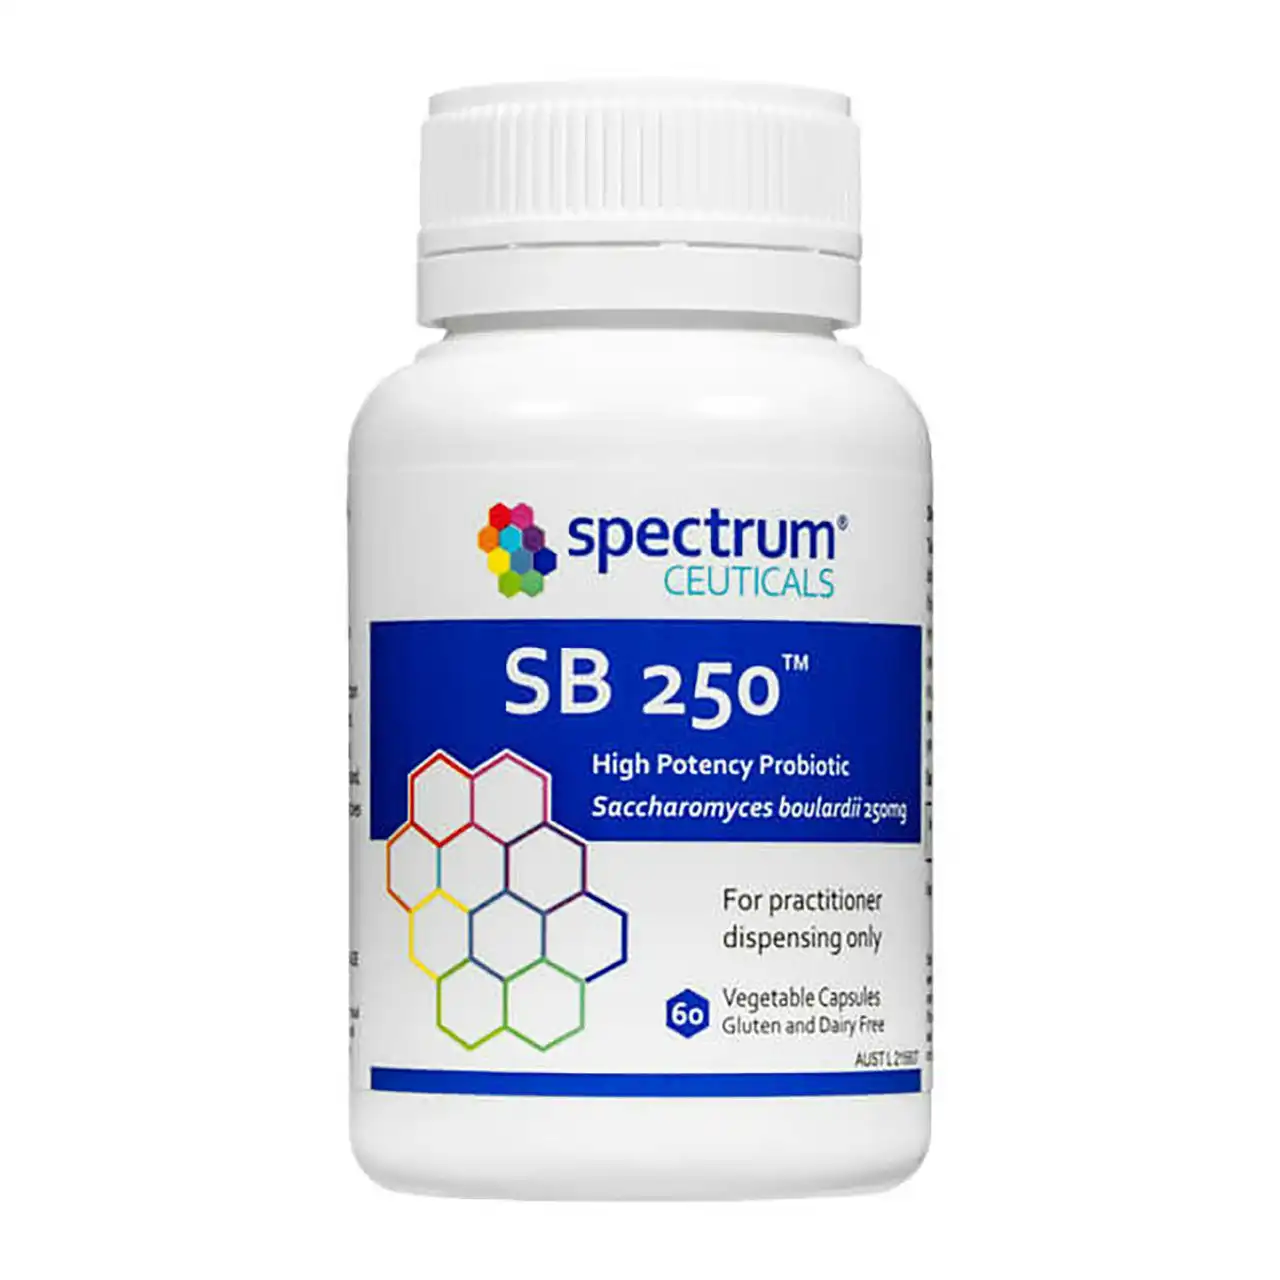 SpectrumCeuticals SB 250 Capsules 60